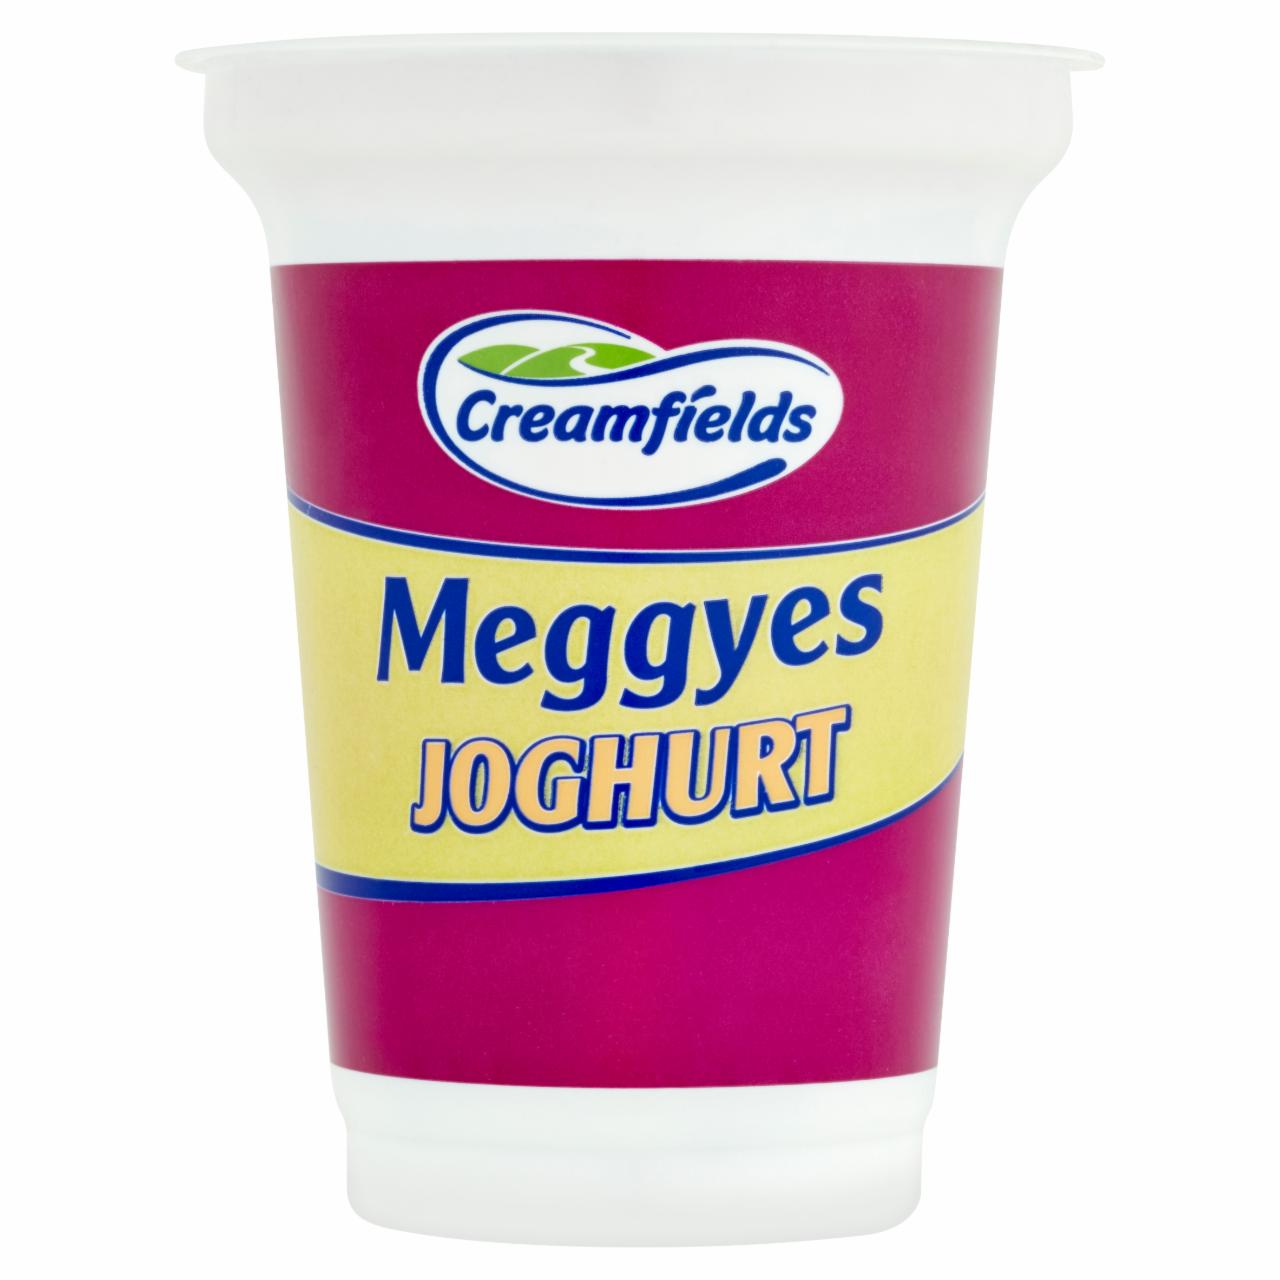 Képek - Creamfields meggyes joghurt 375 g